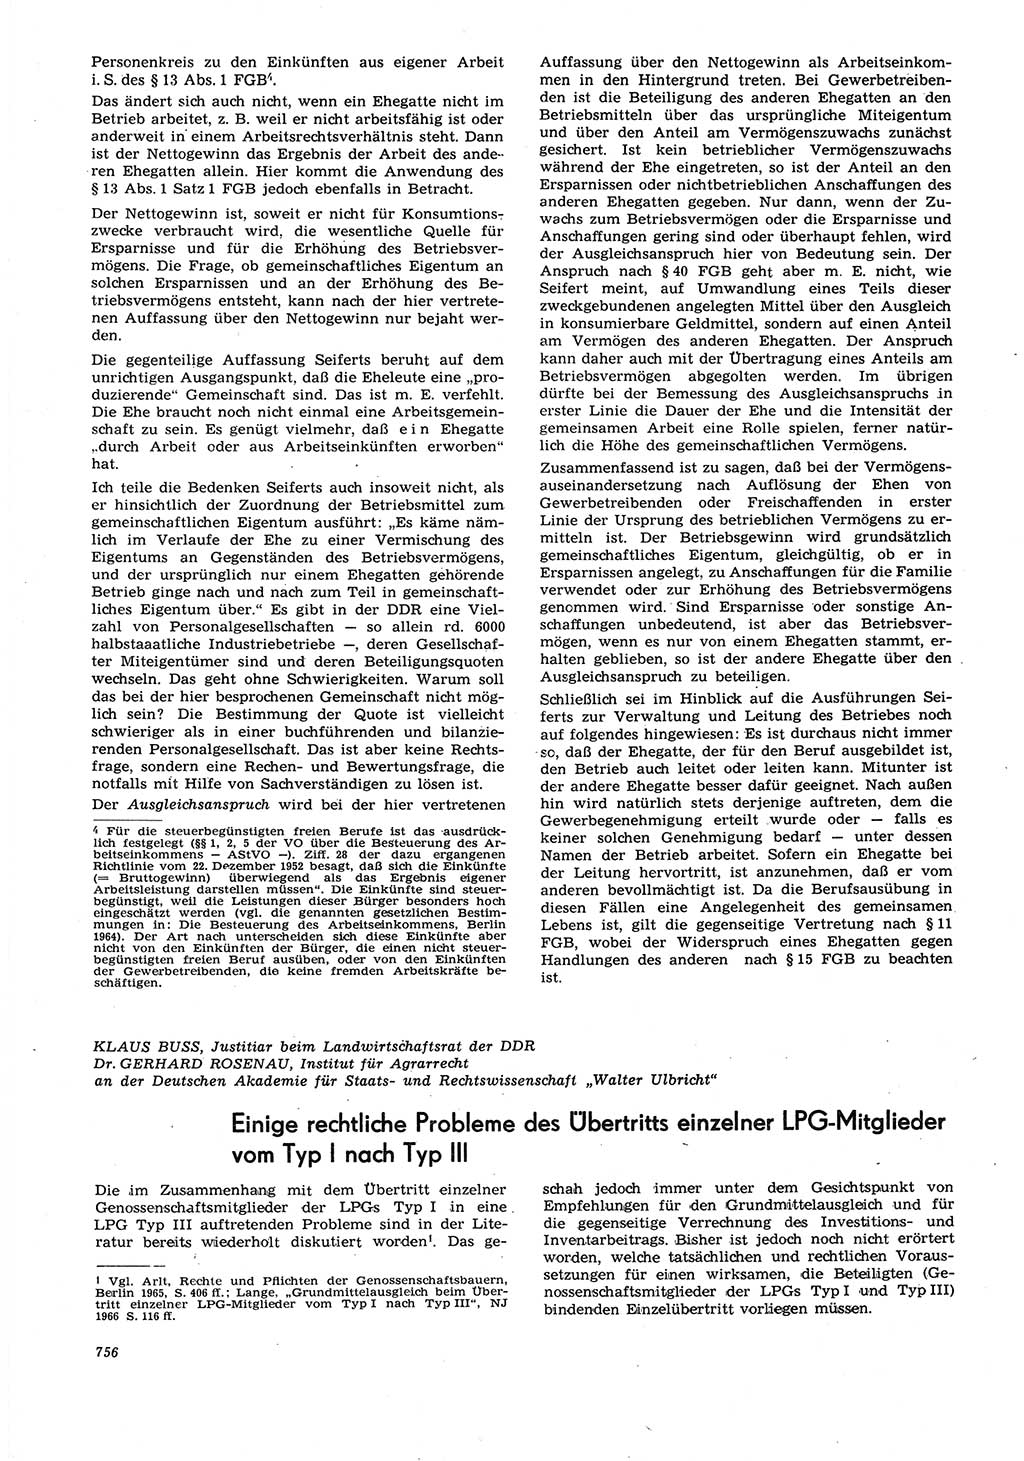 Neue Justiz (NJ), Zeitschrift für Recht und Rechtswissenschaft [Deutsche Demokratische Republik (DDR)], 21. Jahrgang 1967, Seite 756 (NJ DDR 1967, S. 756)